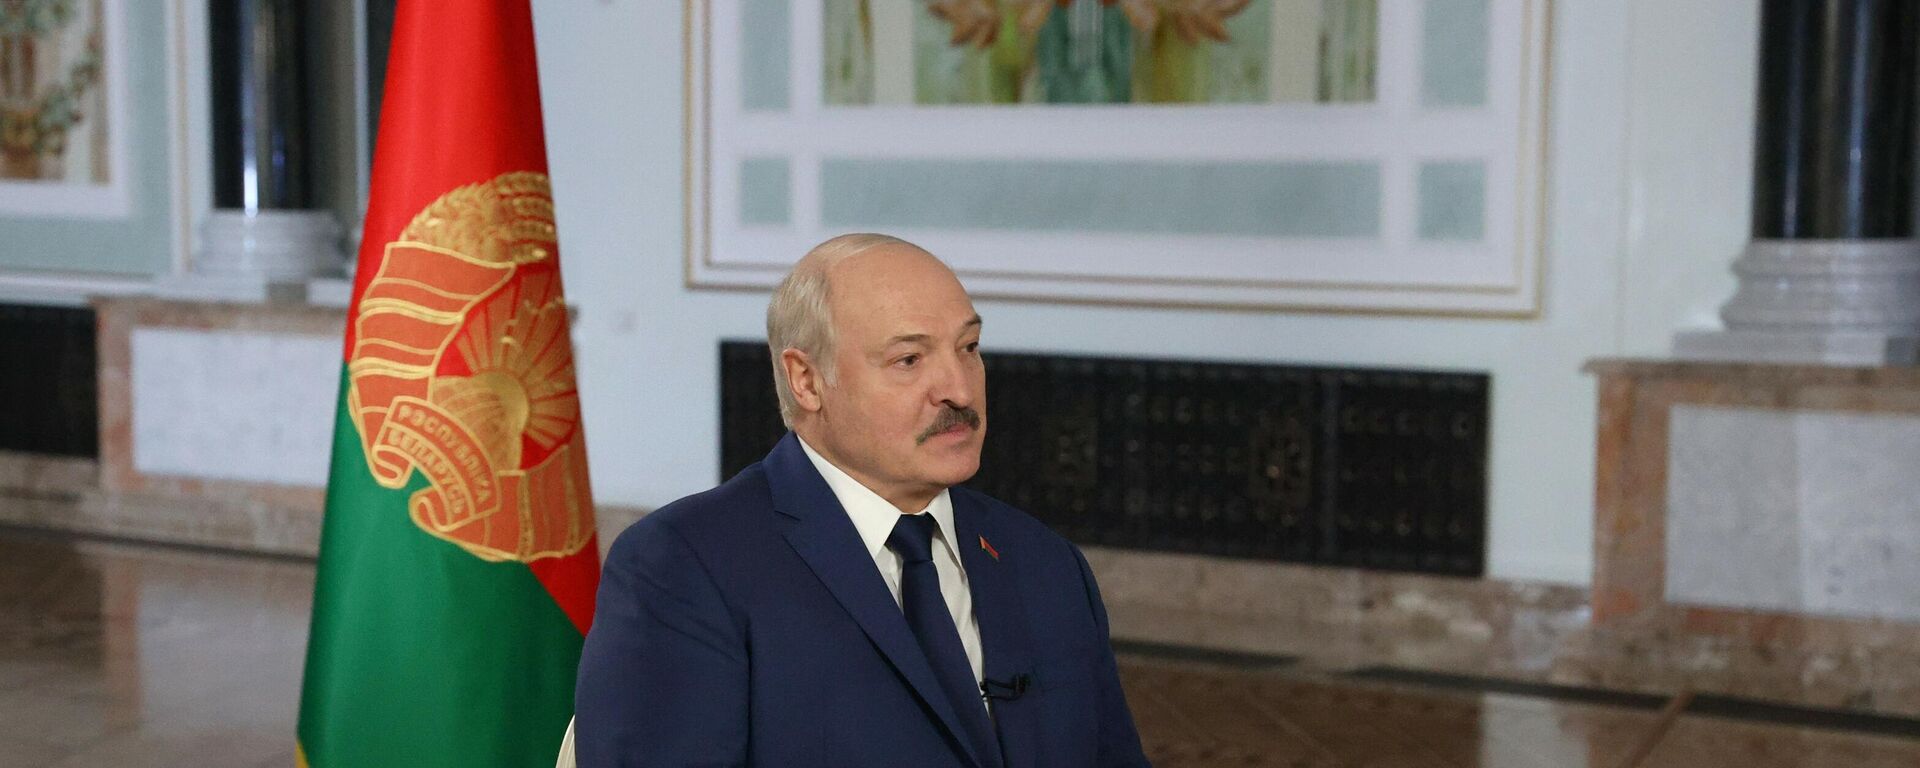 Belarus Devlet Başkanı Aleksandr Lukaşenko, Rossiya Segodnya Uluslararası Haber Ajansı Genel Müdürü Dmitriy Kiselev’e röportaj verdi. - Sputnik Türkiye, 1920, 28.01.2022